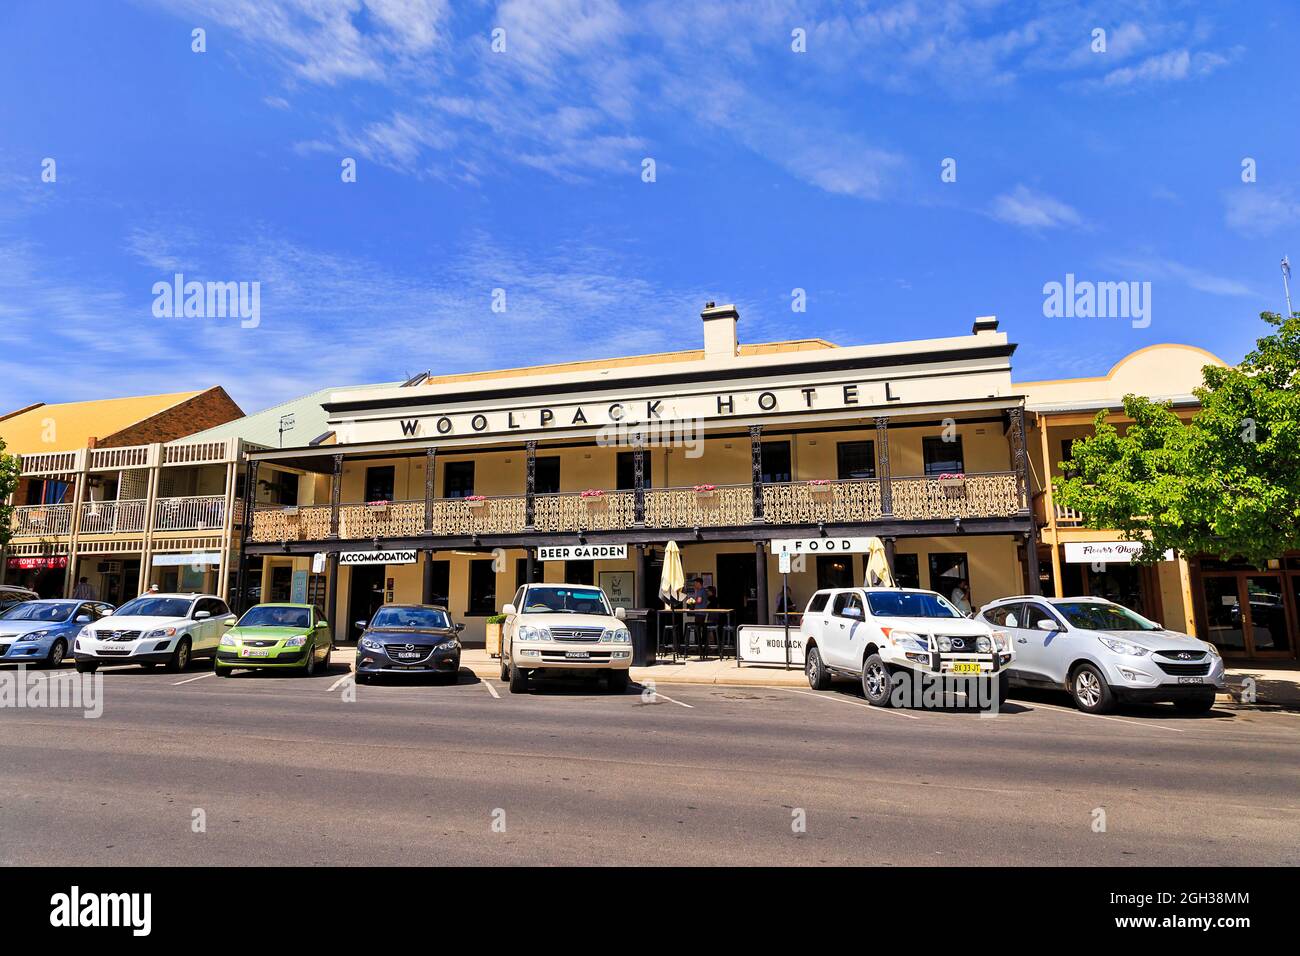 Mudgee, Australien - 8. Oktober 2020: Historisches Wahrzeichen Gebäude der traditionellen australischen ländlichen Architektur - Woolpack Hotel mit Pub und Ufer auf Ma Stockfoto